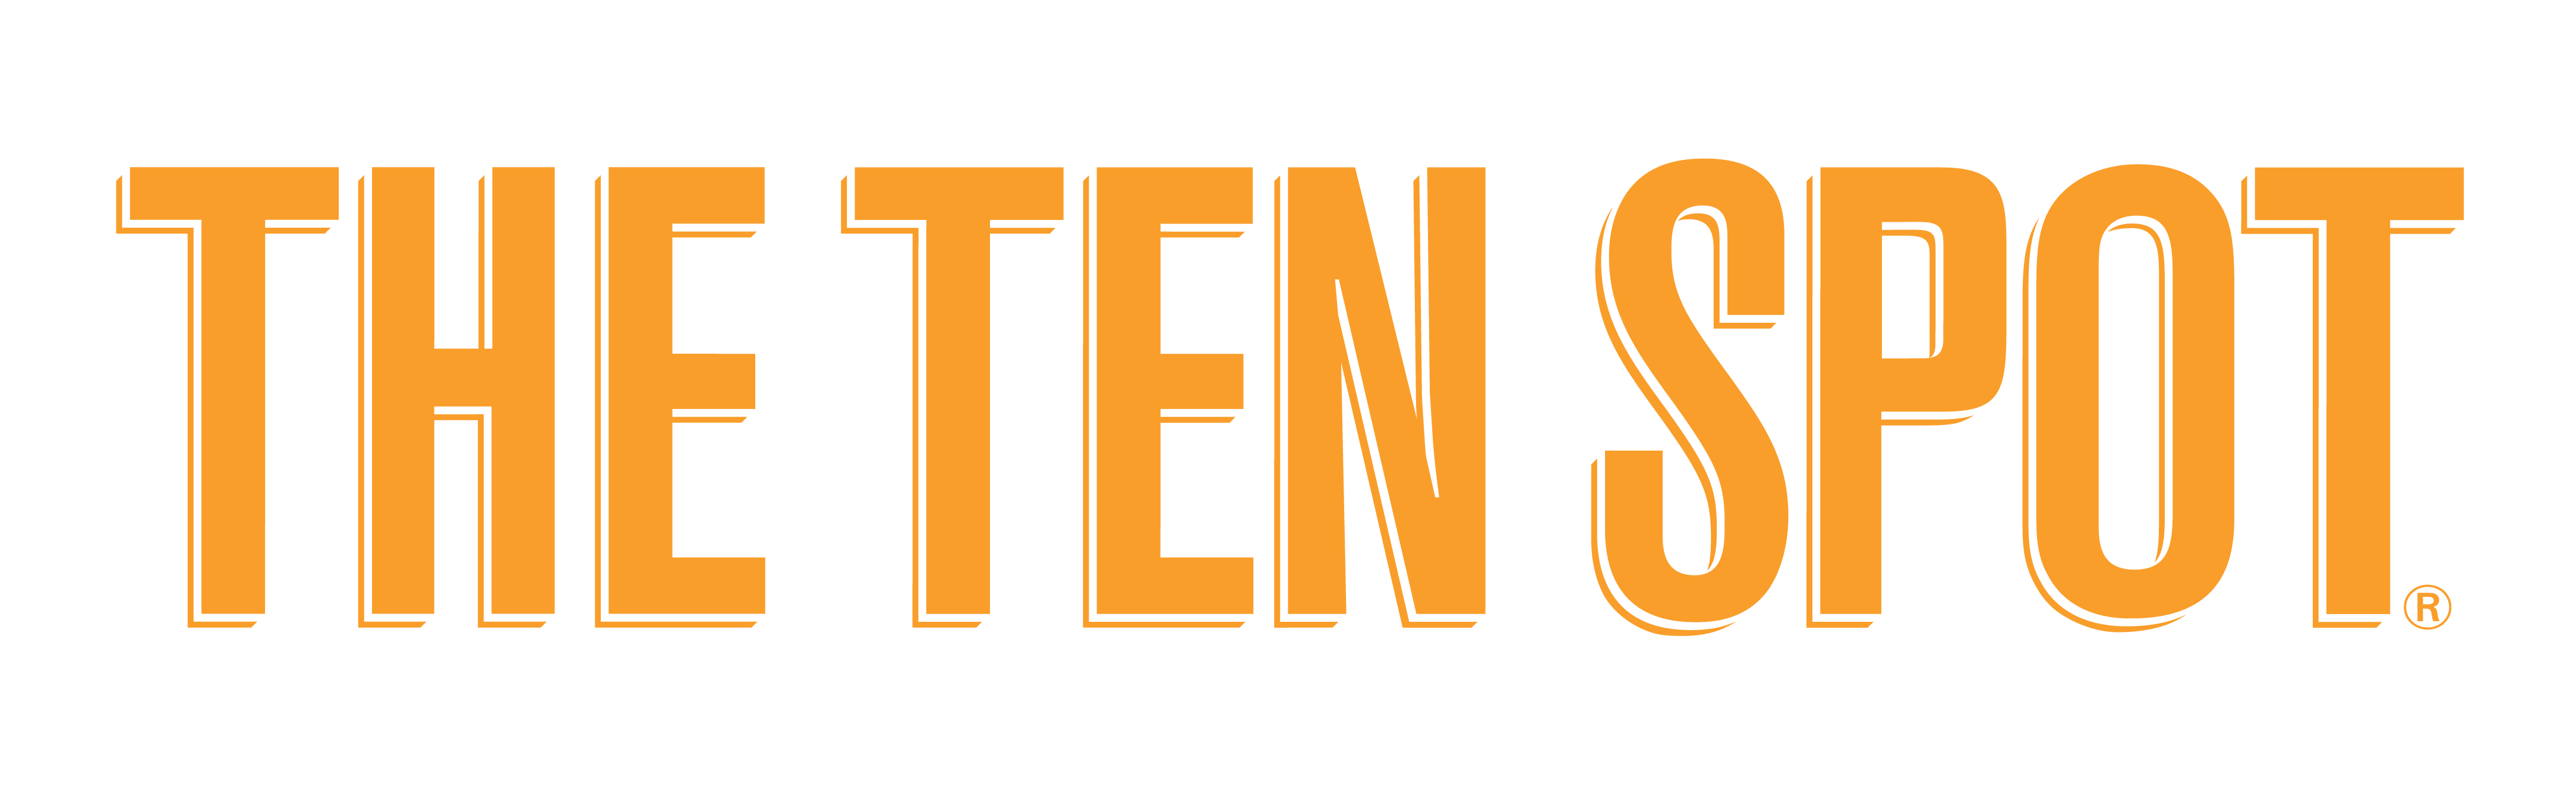 The Ten Spot logo